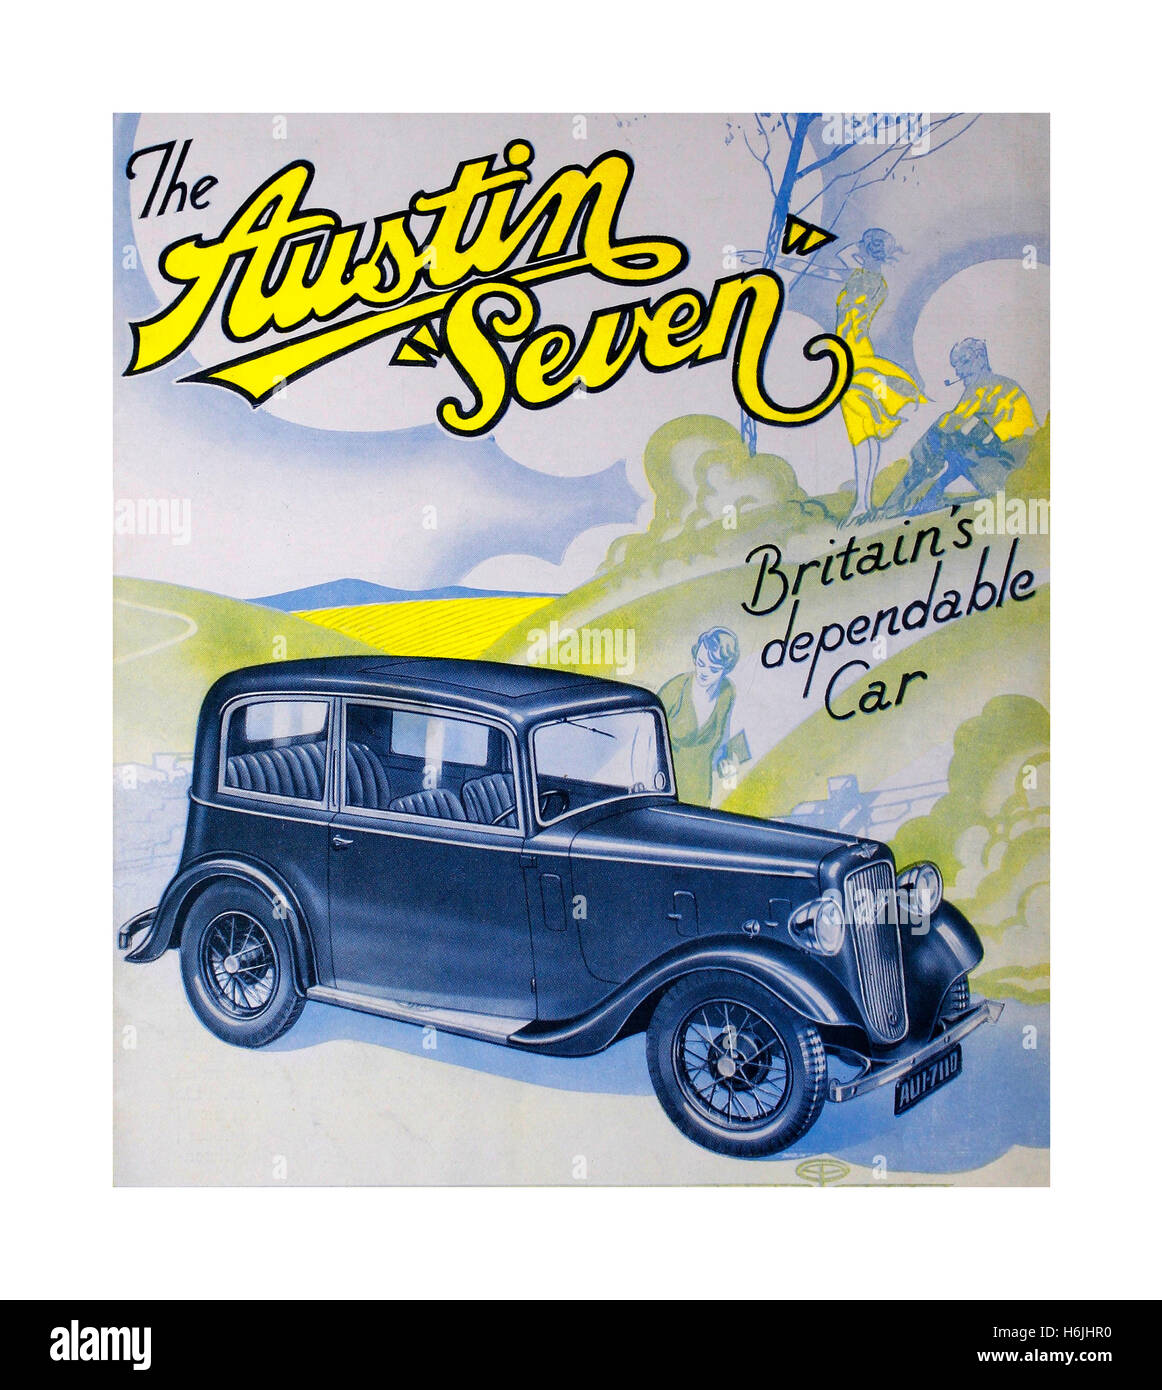 Vintage poster pour l'Austin 7 une économie salon de voiture produite à partir de 1922 jusqu'en 1939 au Royaume-Uni par Austin. Surnommé le 'Baby Austin' c'est à cette époque l'un des plus populaires voitures produites pour le marché britannique et s'est bien vendu à l'étranger. Son effet sur le marché britannique était similaire à celle du modèle T Ford aux États-Unis, le remplacement de la plupart des autres voitures de l'économie britannique et cyclecars du début des années 1920. Banque D'Images